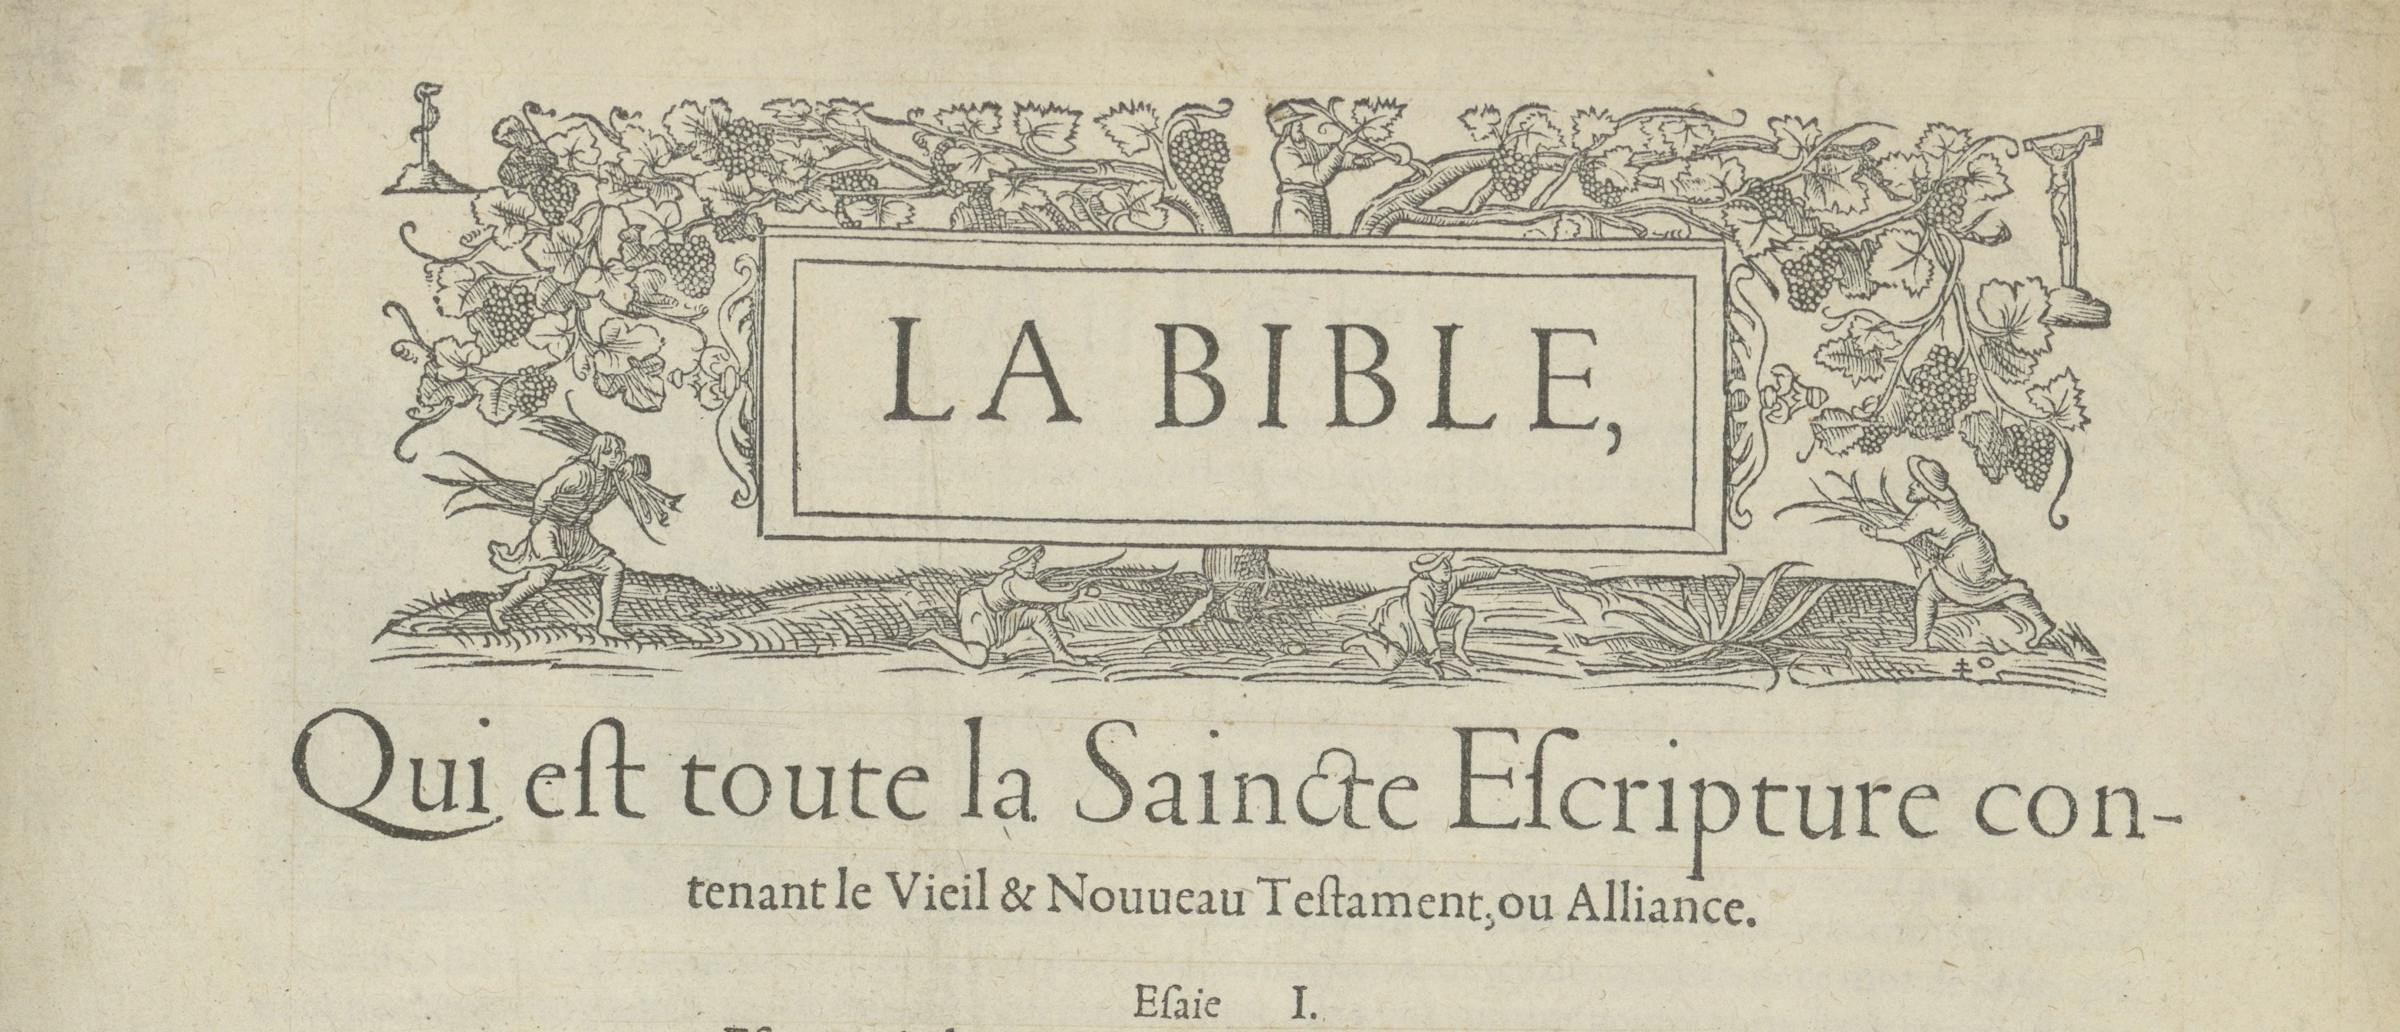 Robert Estienne’s 1553 Bible